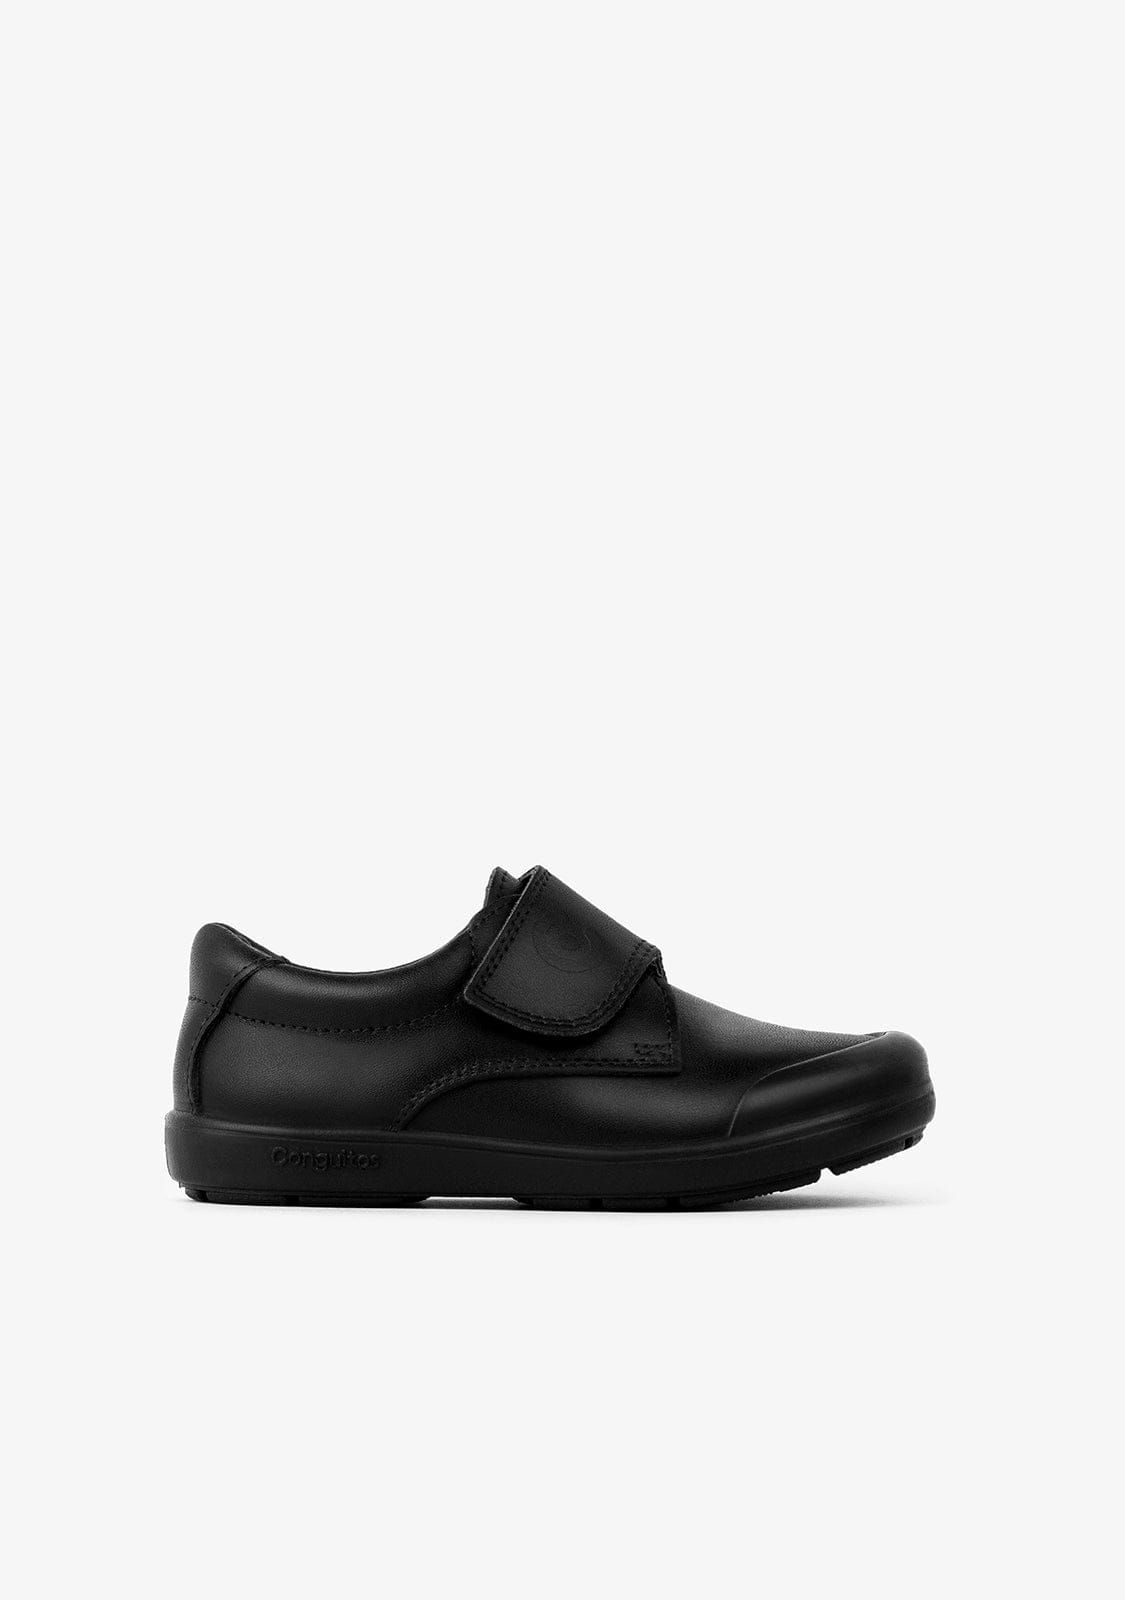 CONGUITOS Shoes Boy's Black Washable Leather School Shoes